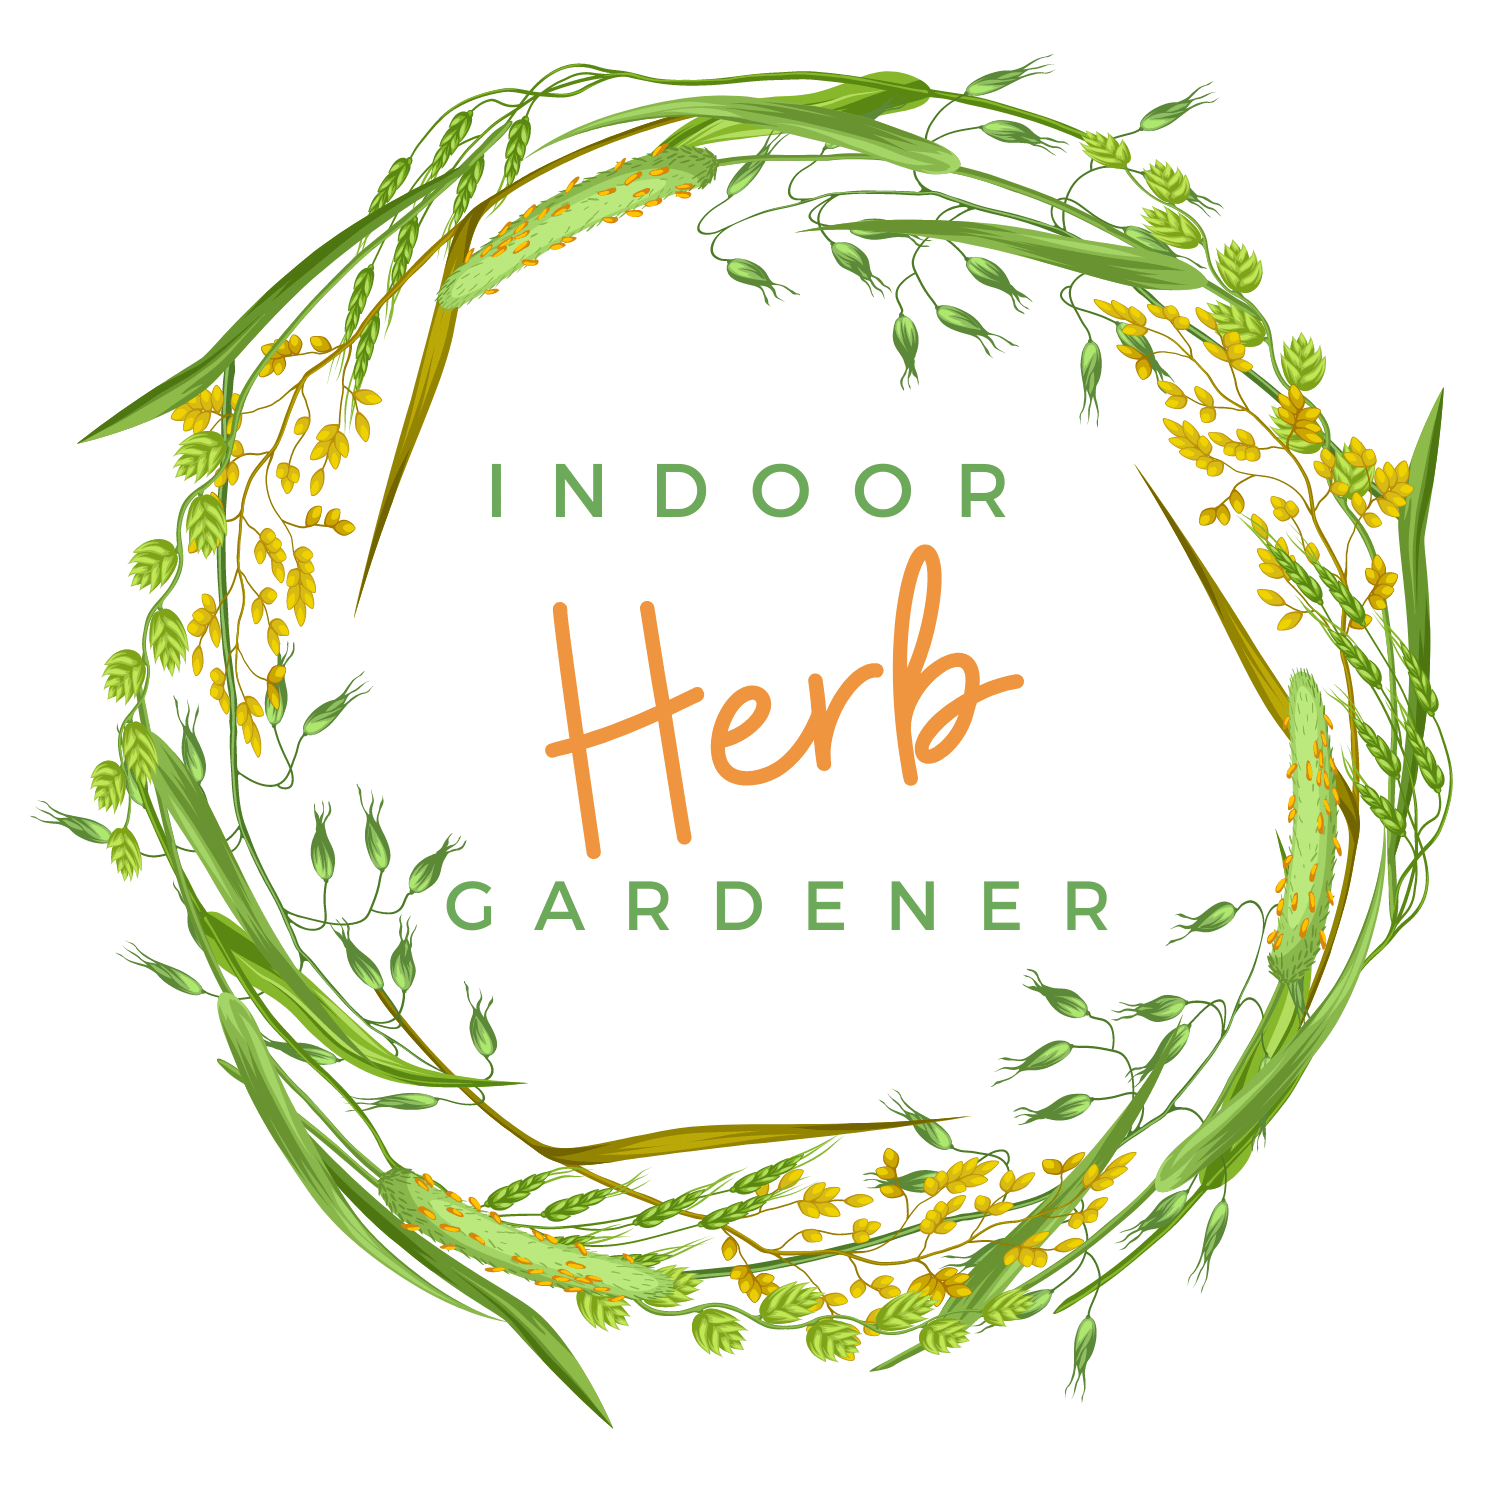 The Indoor Herb Gardener